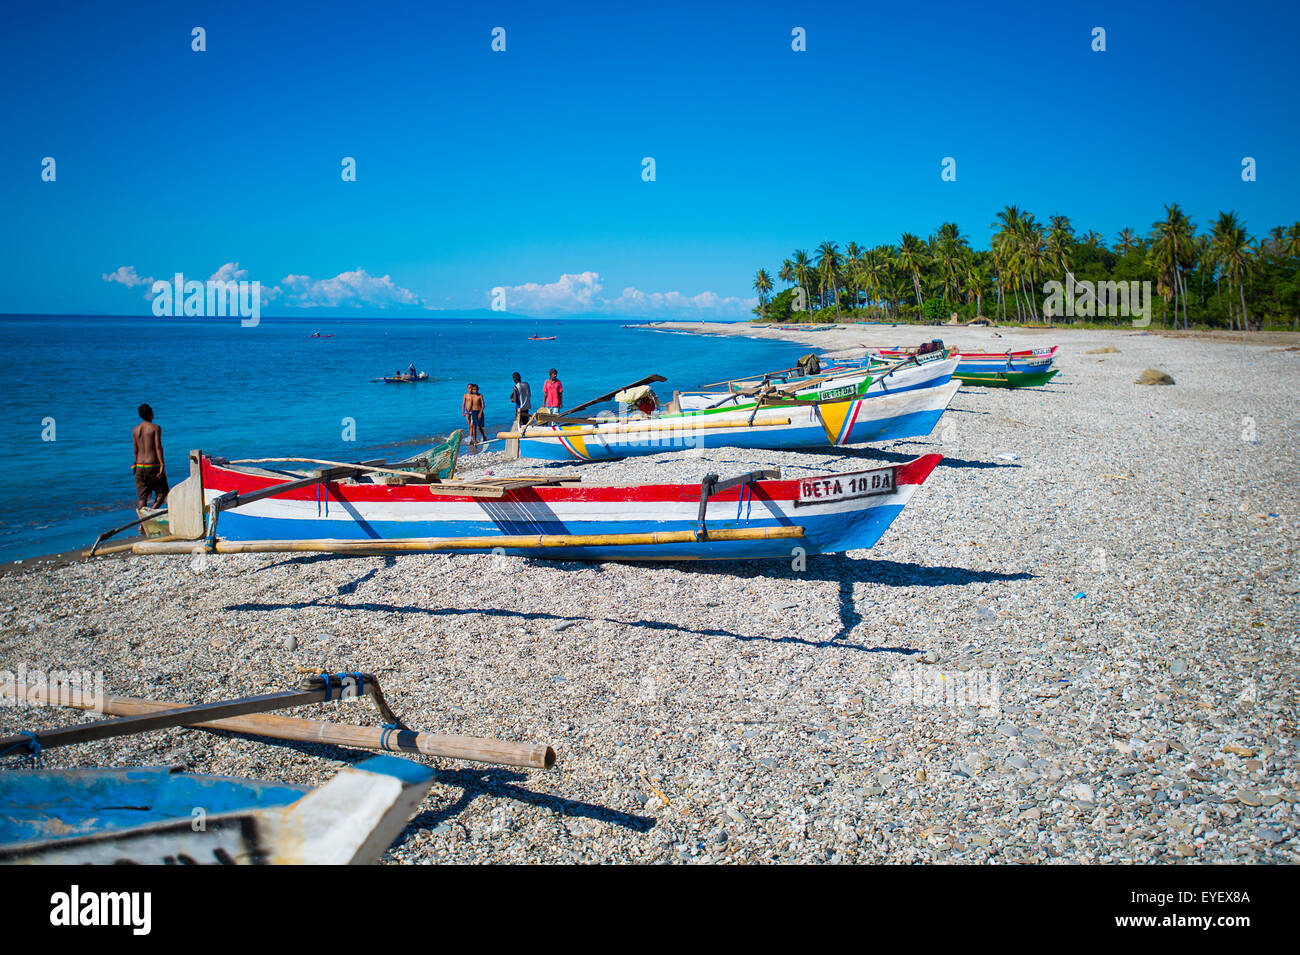 Bateaux colorés sur la plage ; Dili, Timor-Leste Banque D'Images